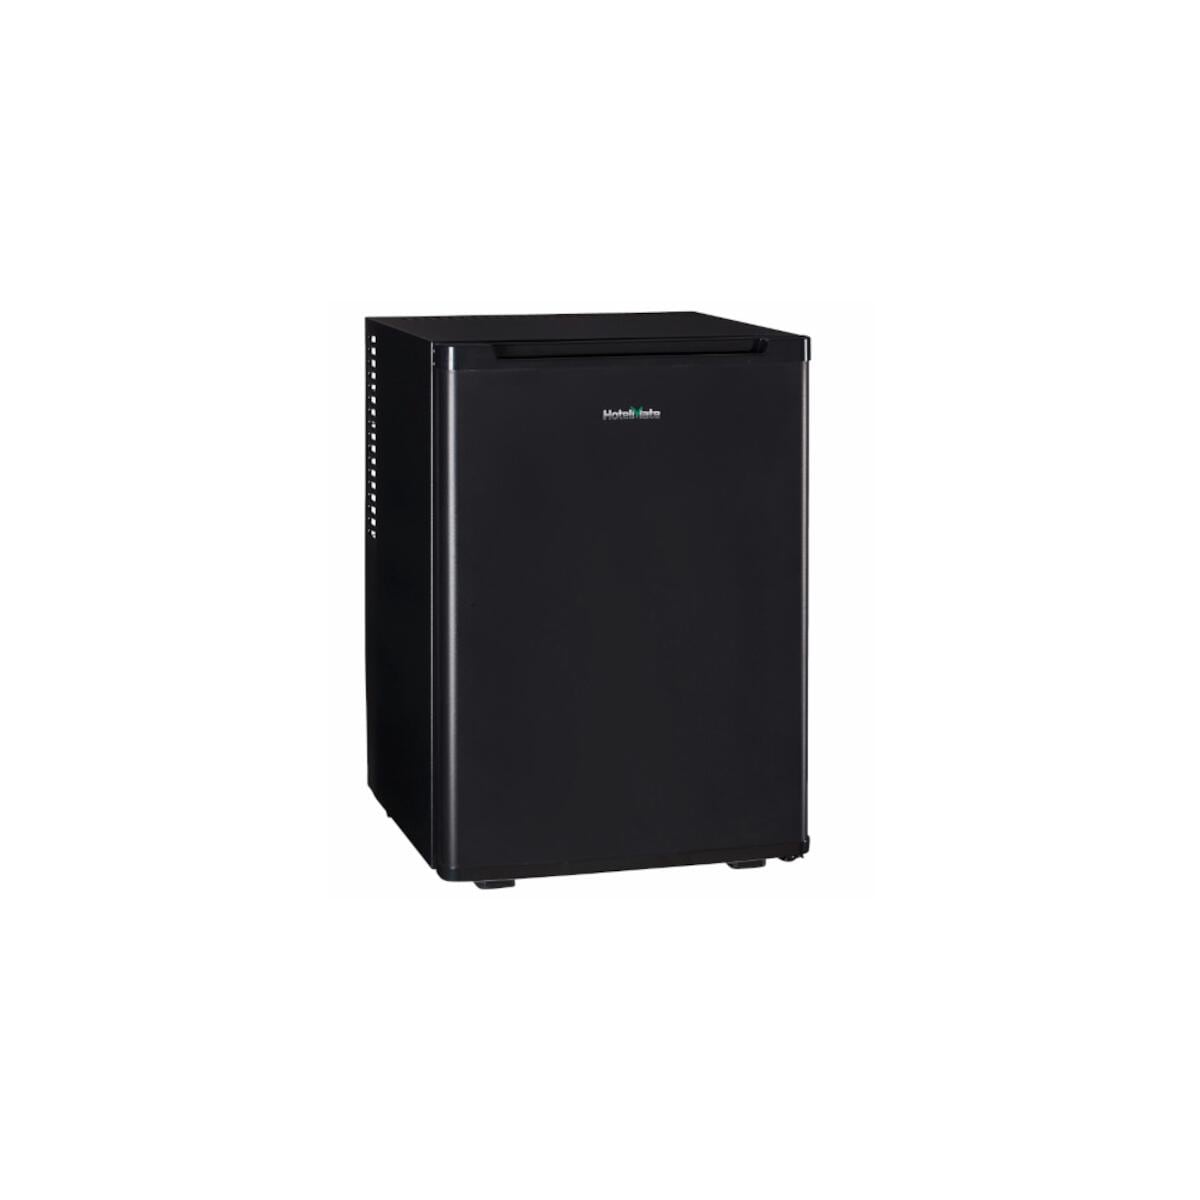 PKM MC40E Stand Minibar Kühlschrank, 40 cm breit, 34 L, regelbares